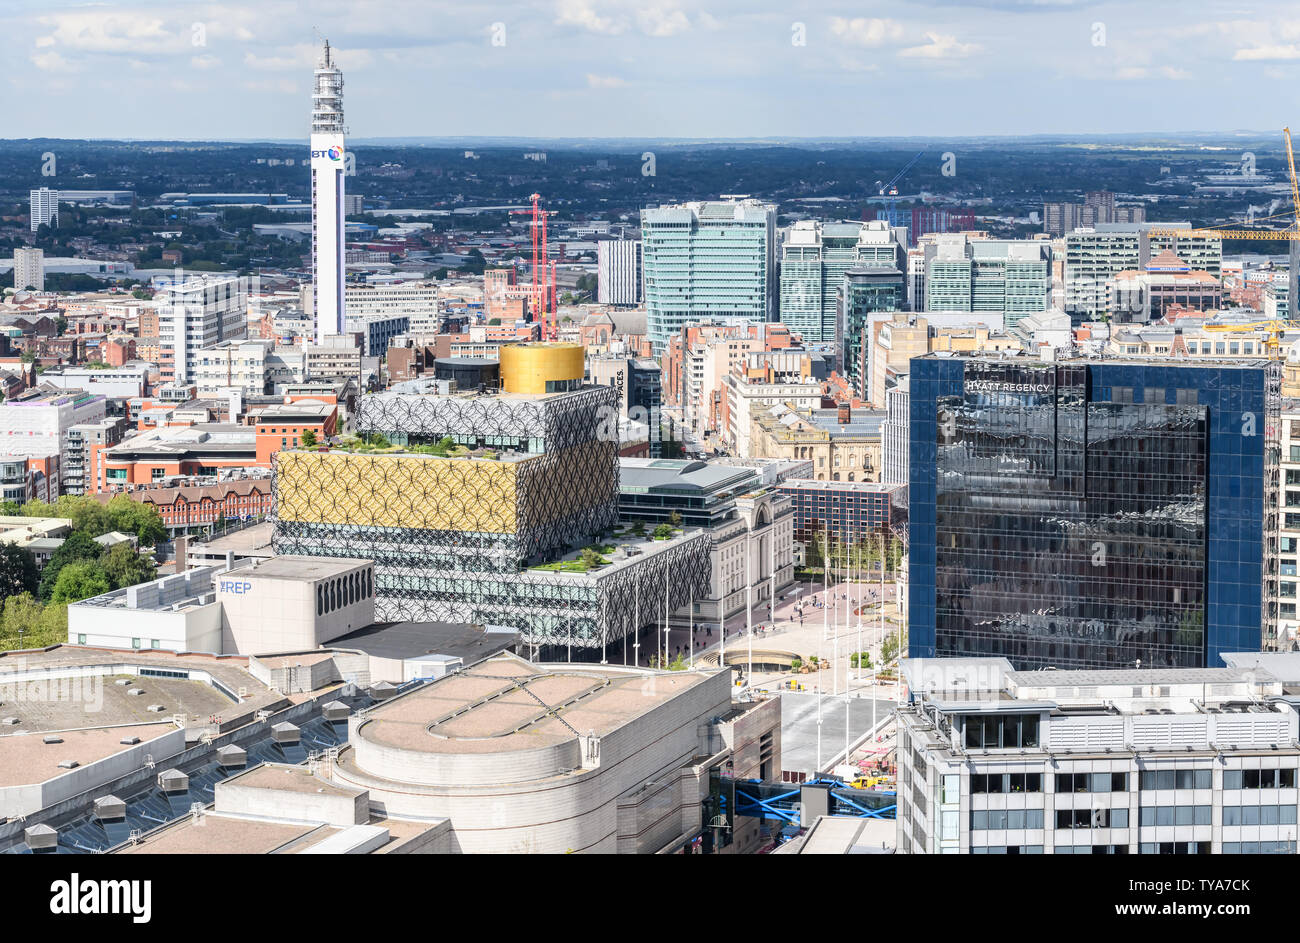 Luftaufnahme von Birmingham Broad Street in Richtung Stadtzentrum. Abgebildet sind die Bibliothek, die Rep-Theater, BT Tower der ICC und der Symphony Hall. Stockfoto